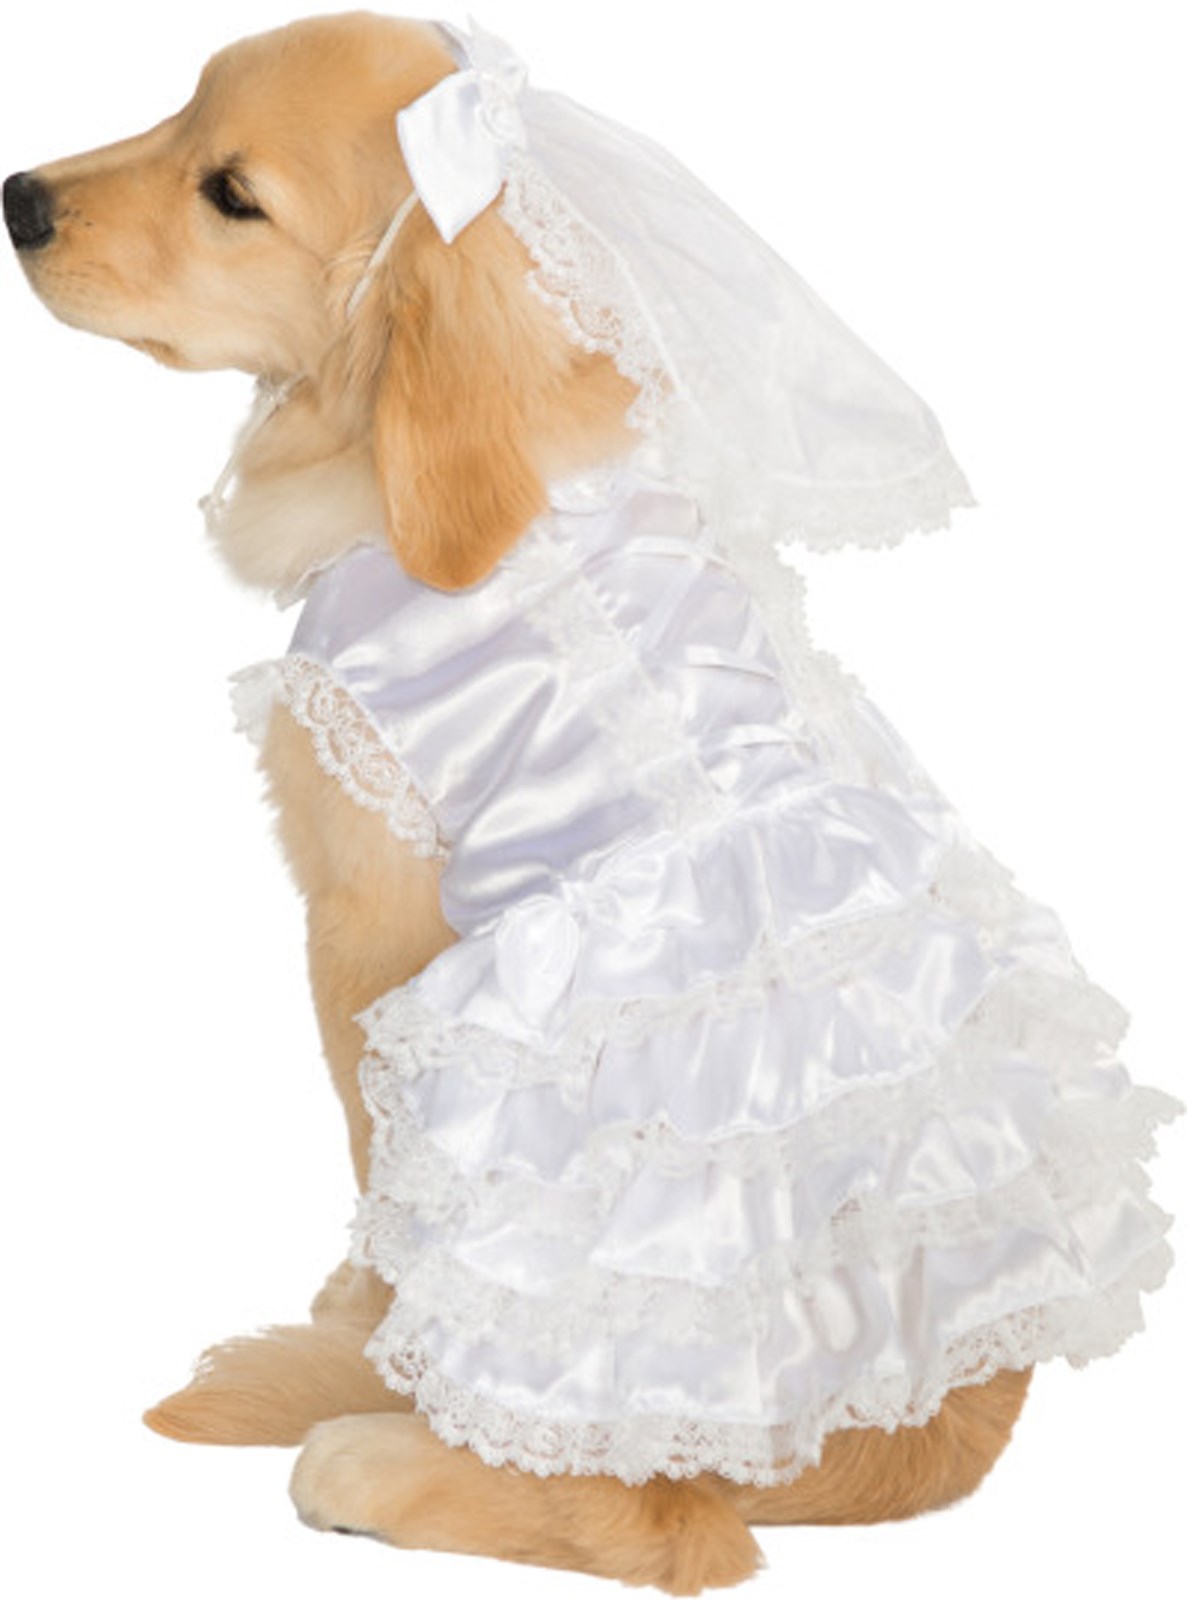 Bride Pet Costume